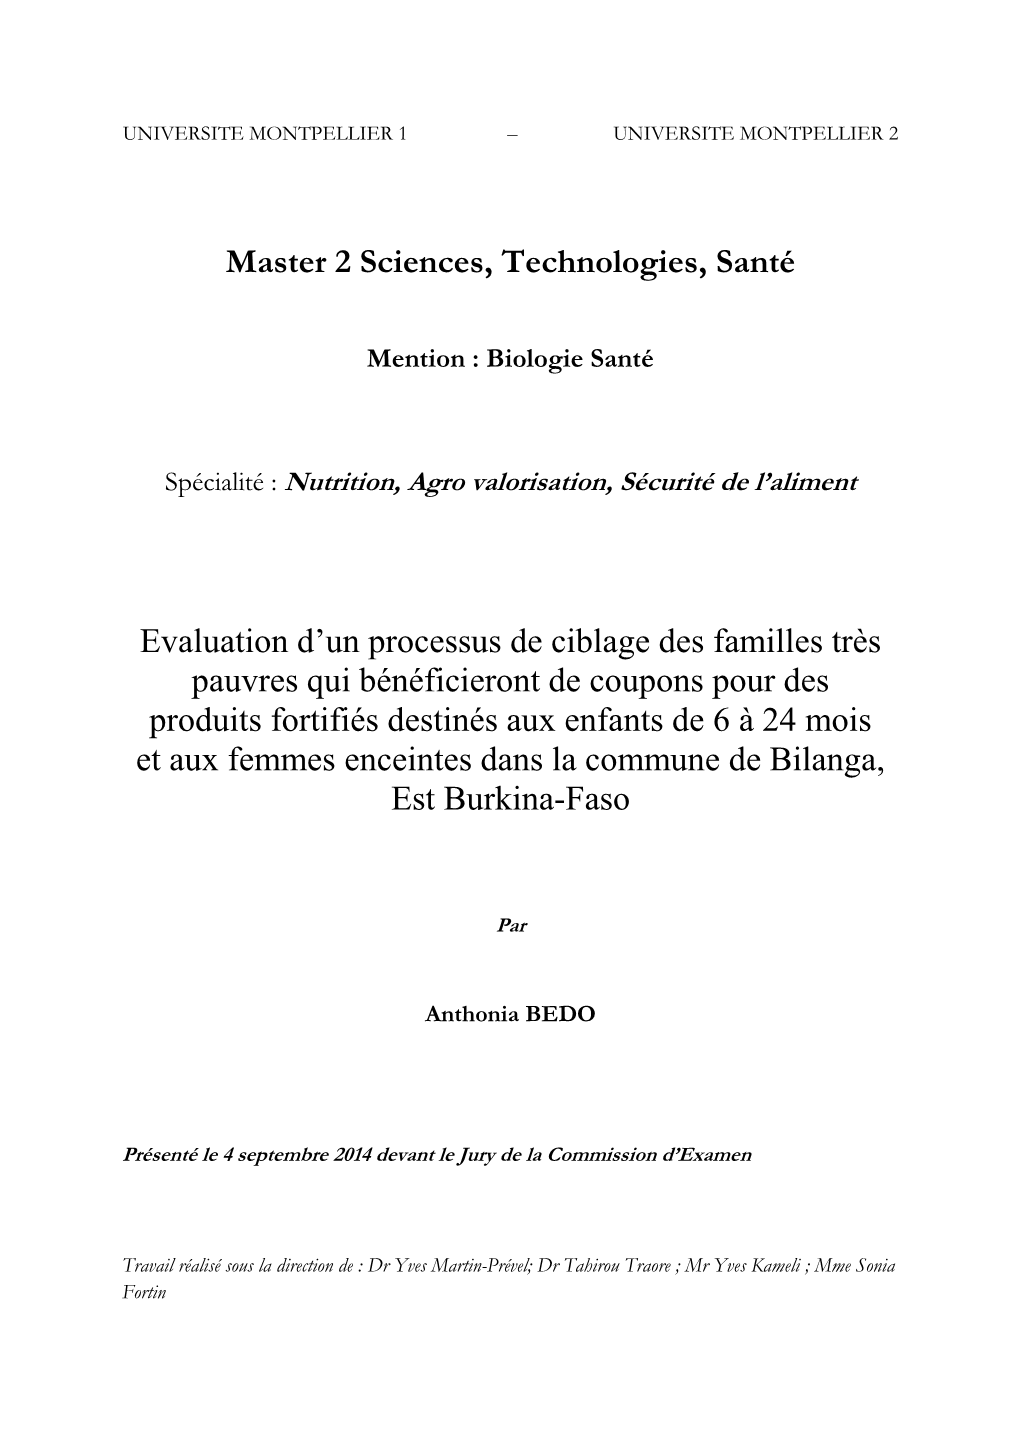 Master 2 Sciences, Technologies, Santé Evaluation D'un Processus De